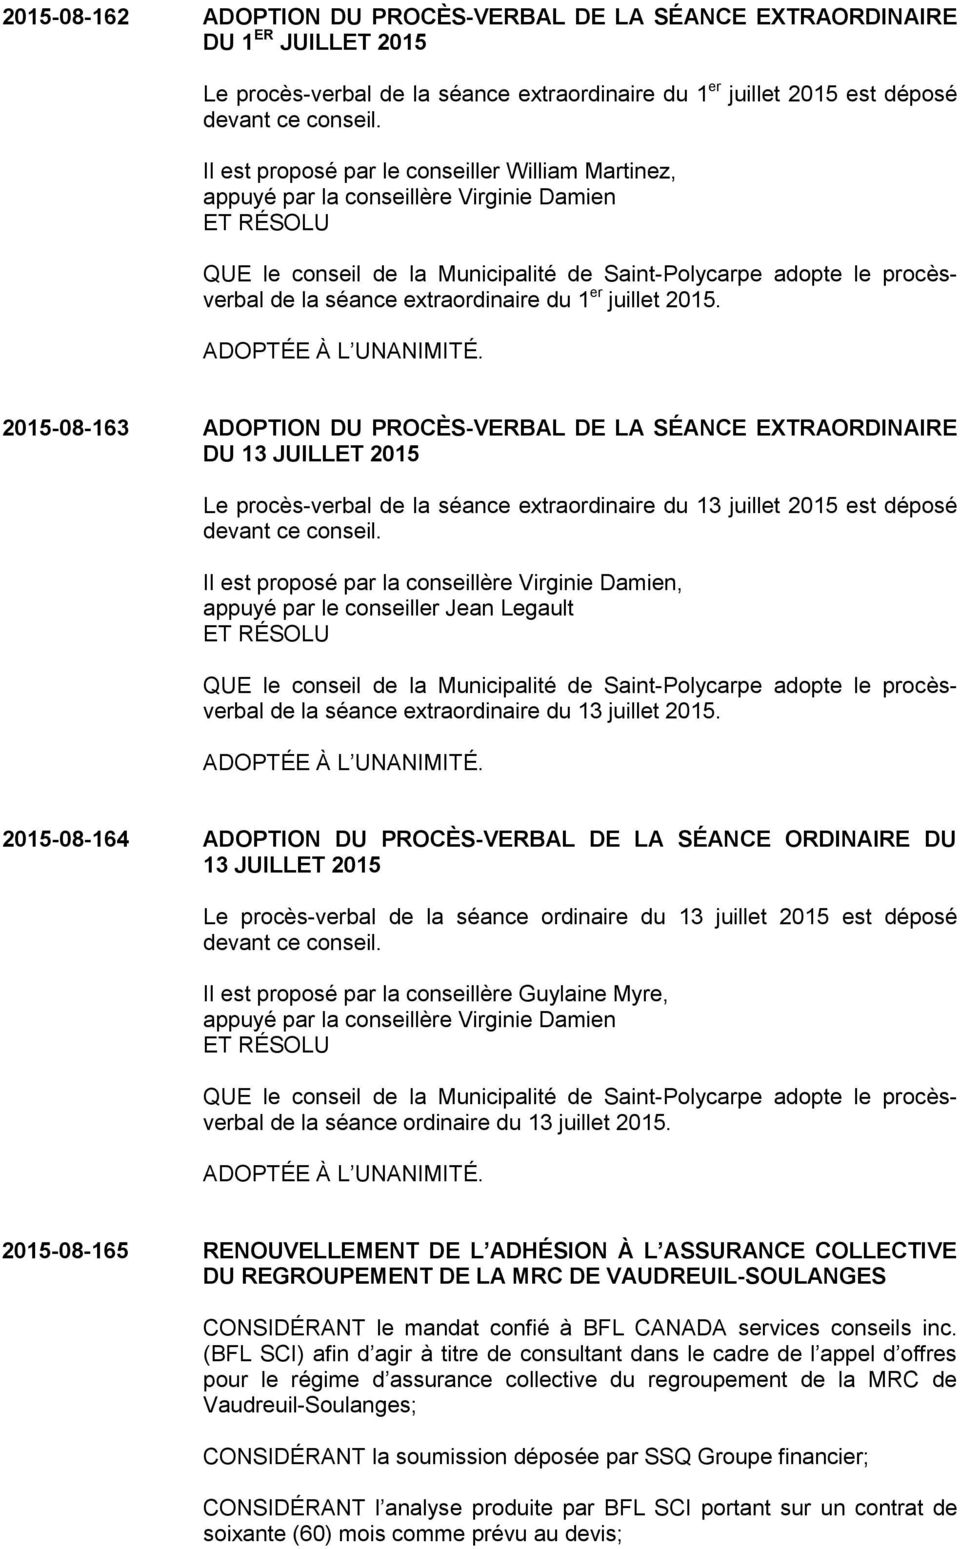 2015-08-163 ADOPTION DU PROCÈS-VERBAL DE LA SÉANCE EXTRAORDINAIRE DU 13 JUILLET 2015 Le procès-verbal de la séance extraordinaire du 13 juillet 2015 est déposé devant ce conseil.